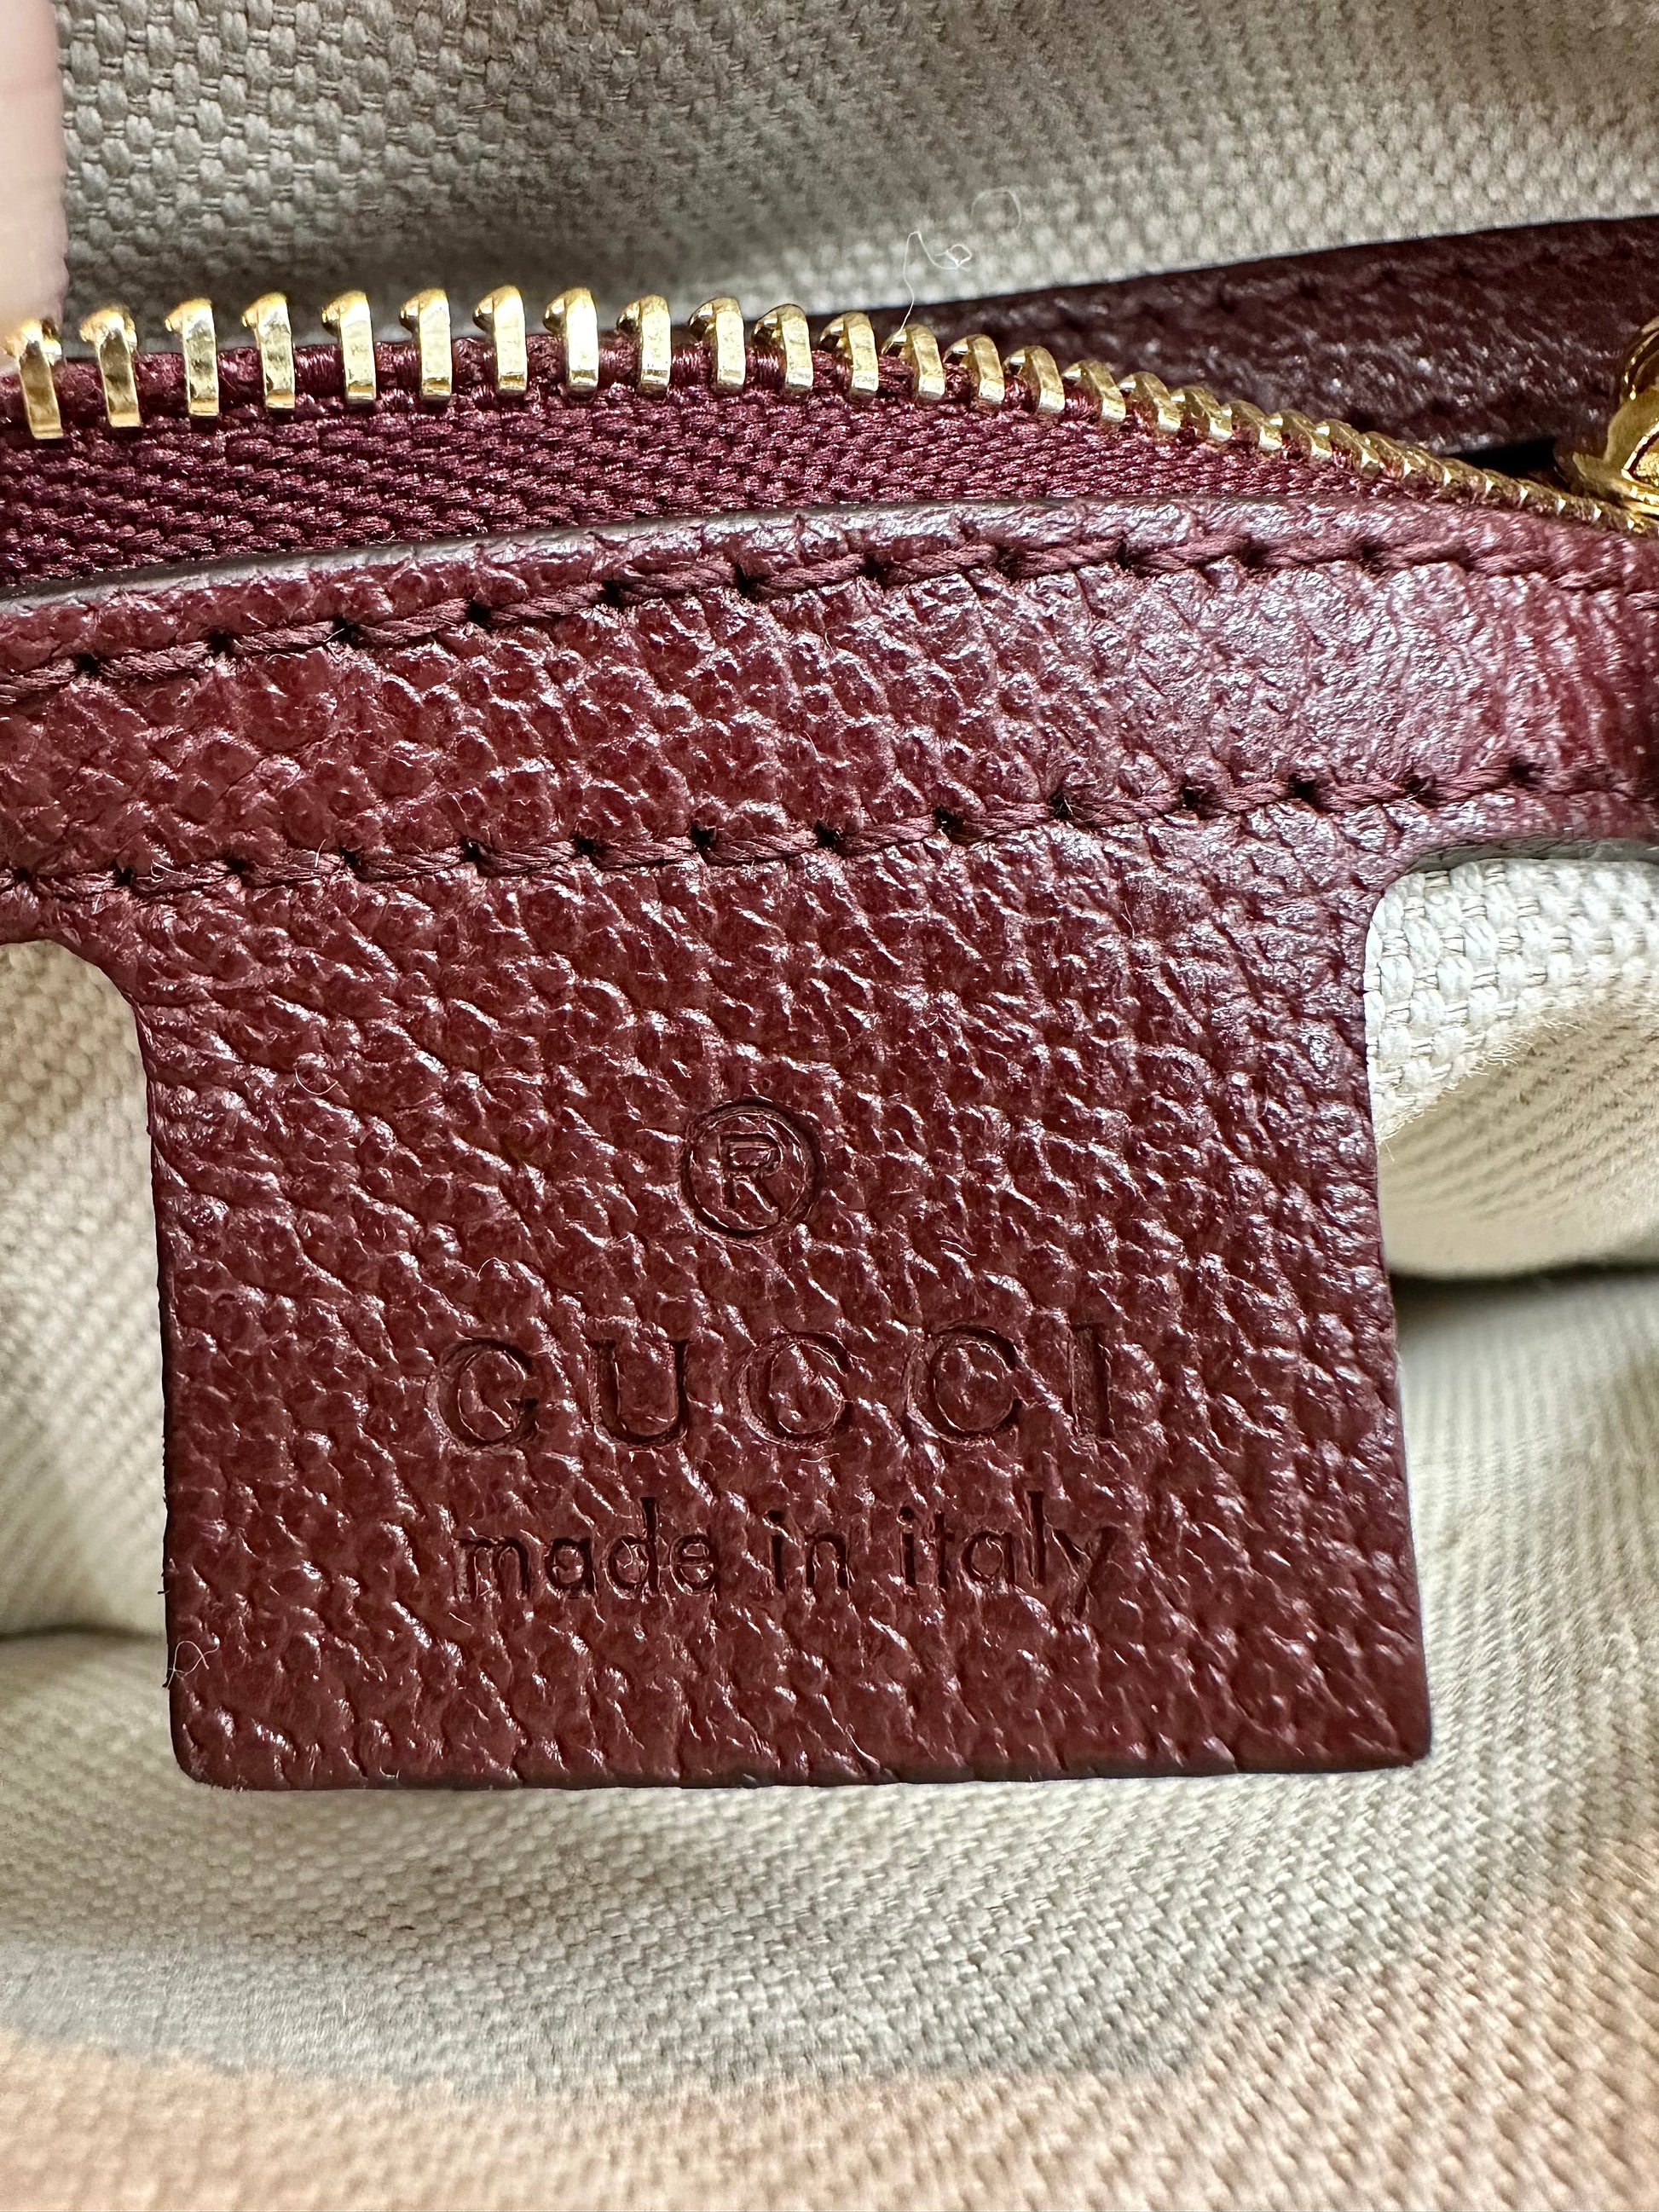 Burgundy Gucci logo leather tag inside